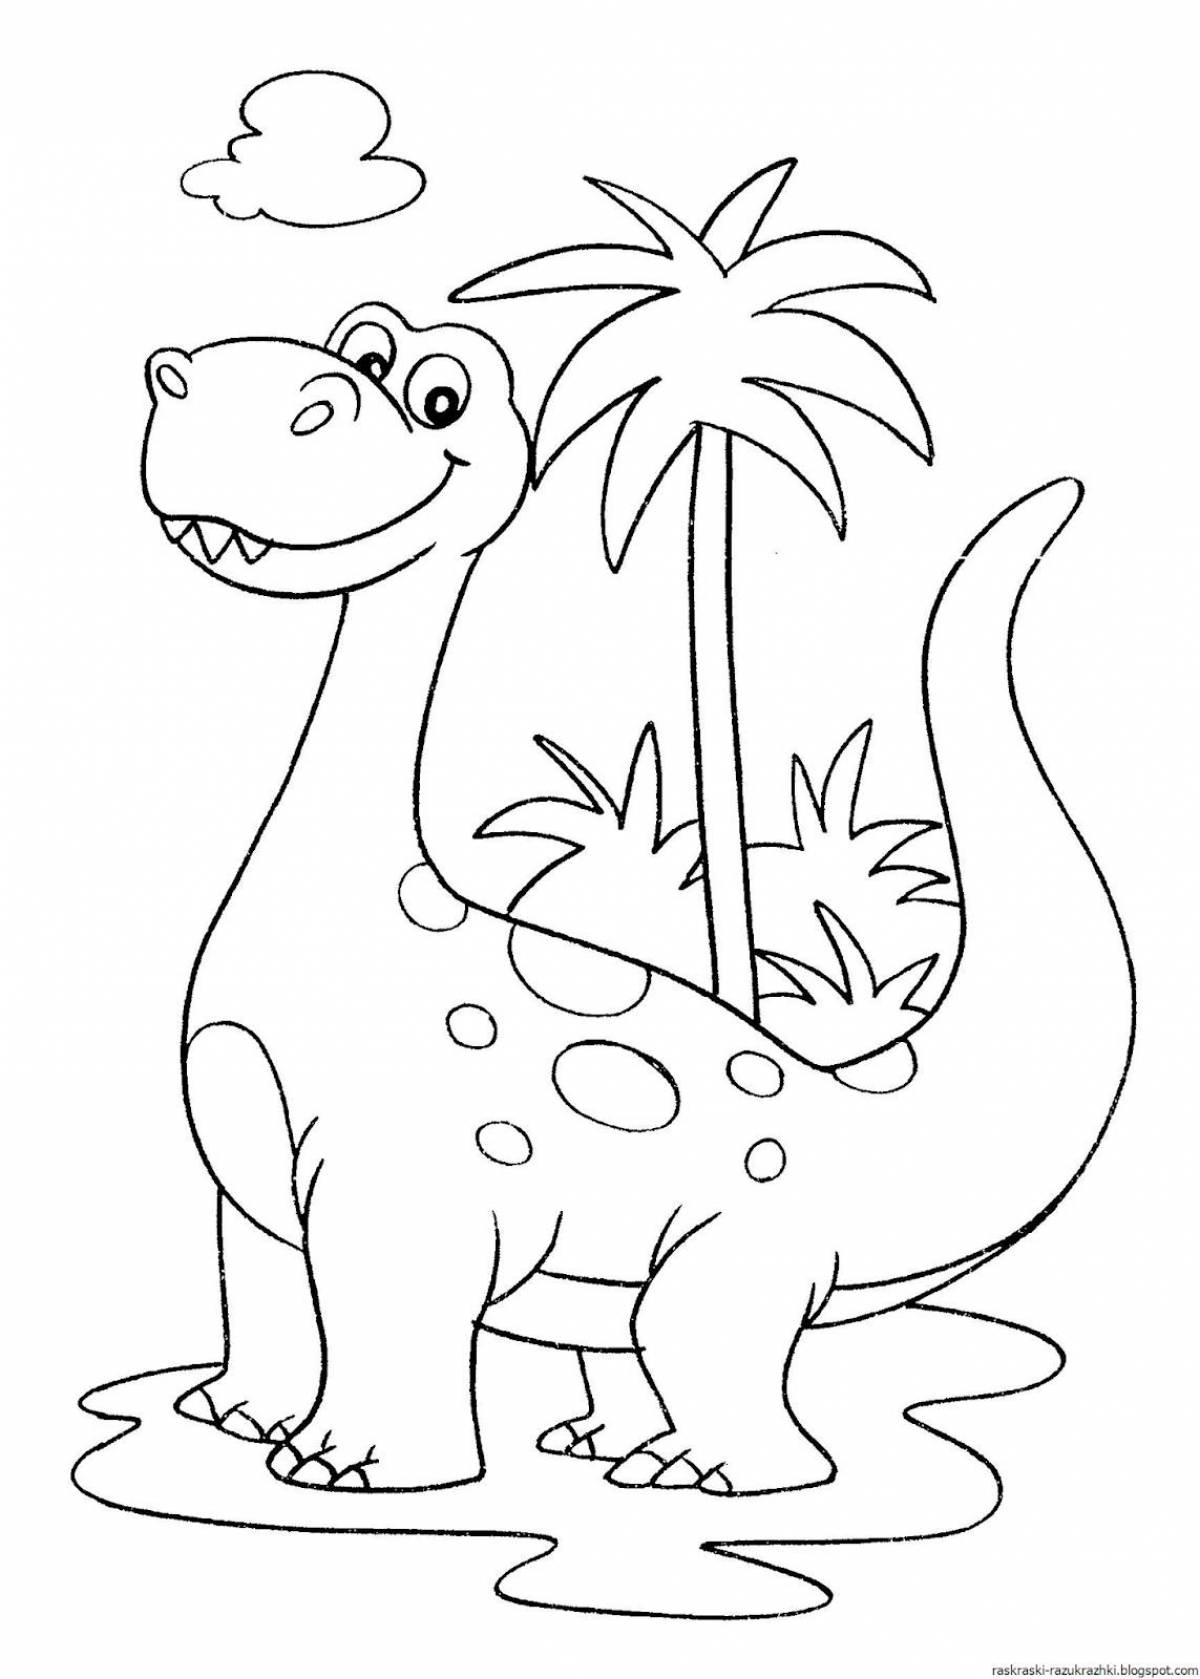 Увлекательная раскраска динозавров для детей 4-5 лет